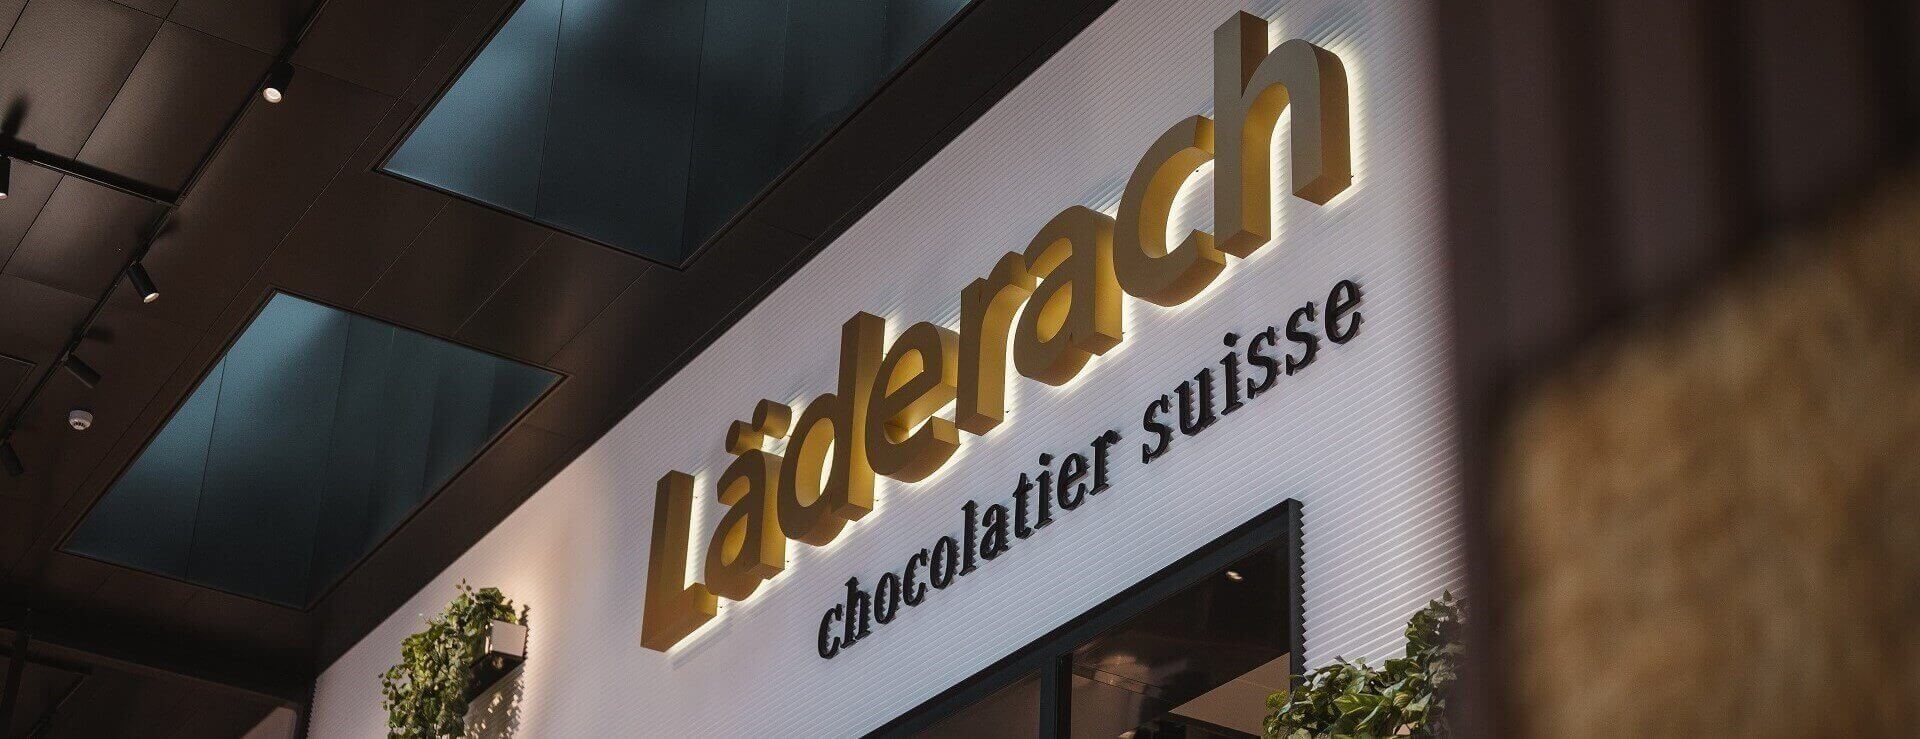 Läderach chocolatier suisse übernimmt die Mietverträge für 34 Geschäfte in den Vereinigten Staaten